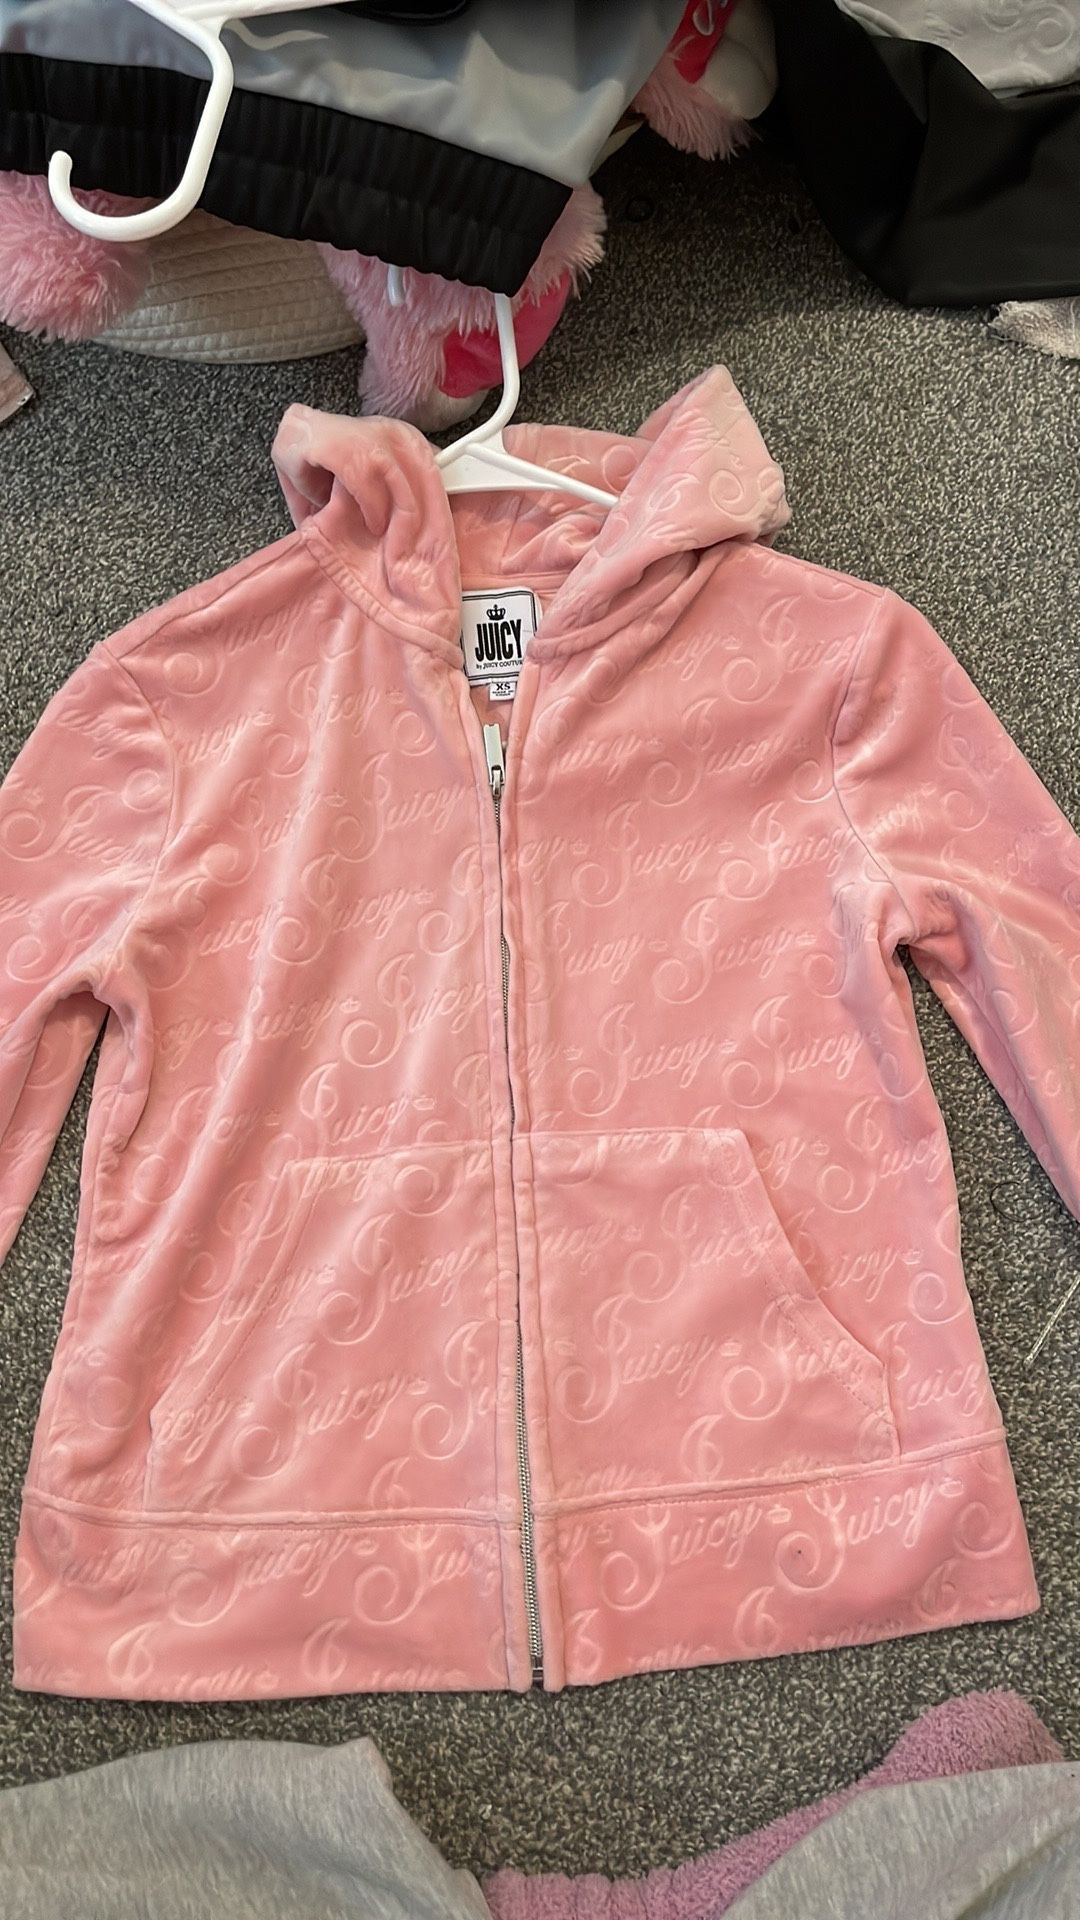 Juicy Couture zip up jacket, Women’s XS, pink/grey